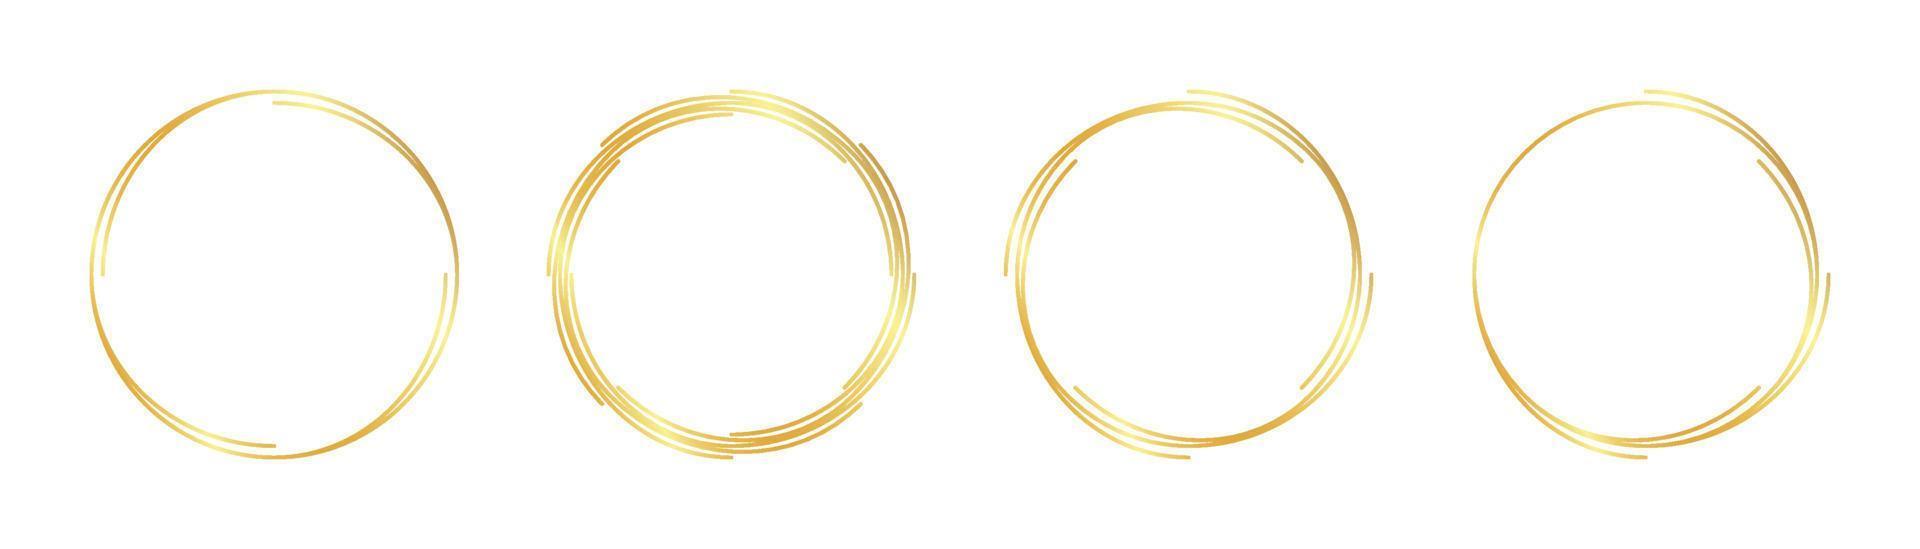 marco dorado circular vector